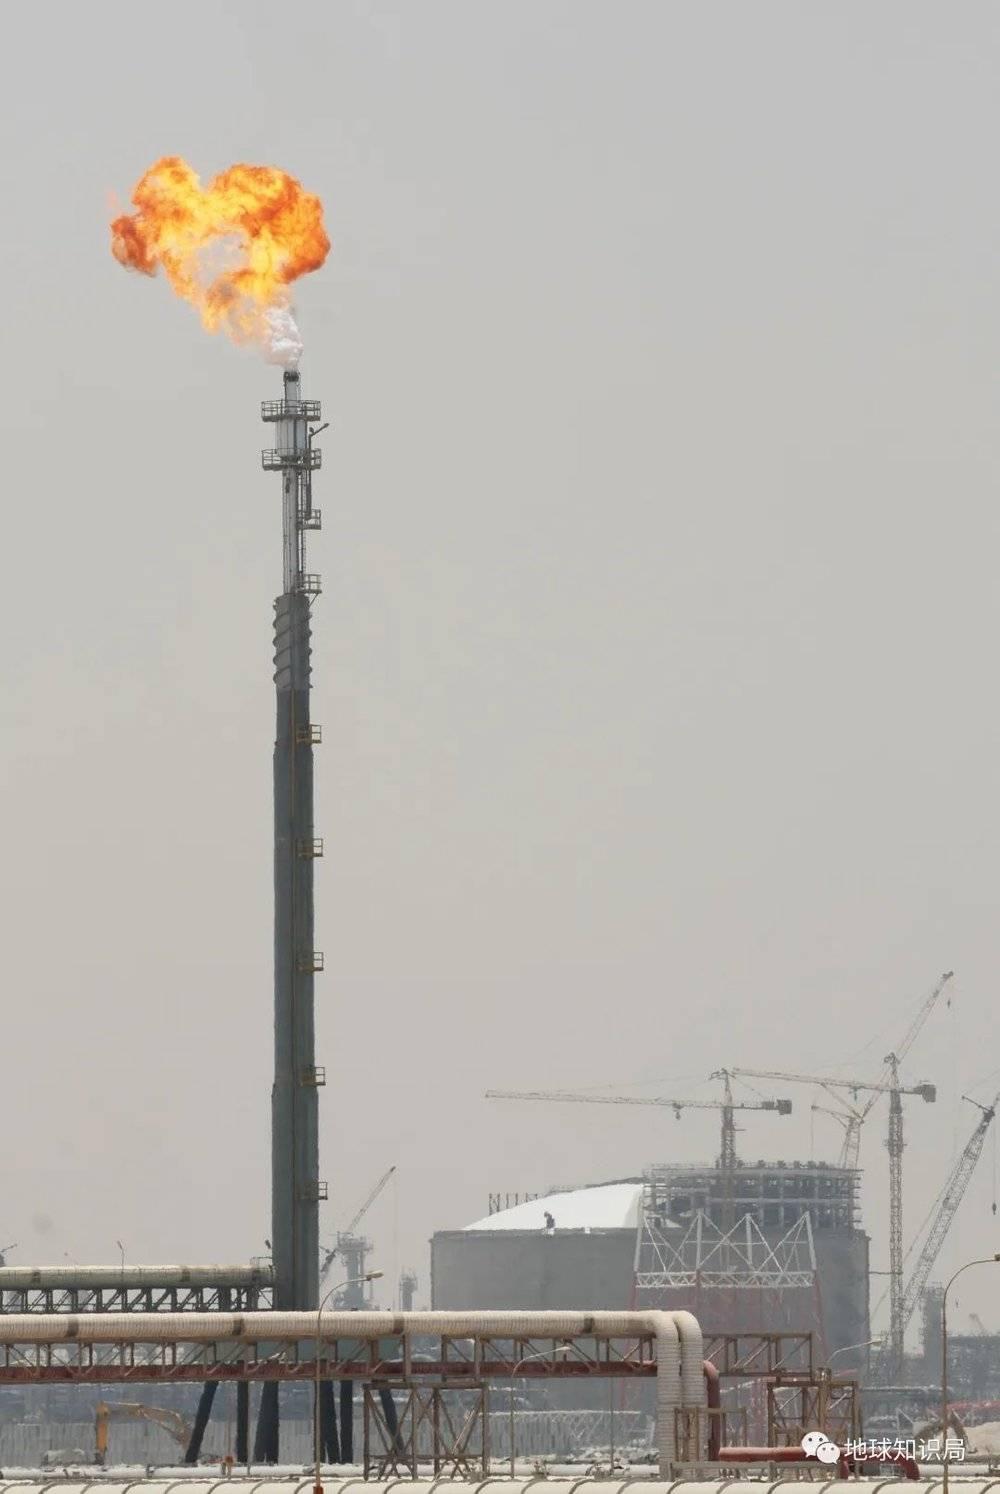 近年来，随着国际油价上涨和环保压力的加大，LNG这种高效清洁的能源受到世界各国的重视（图：Flickr）